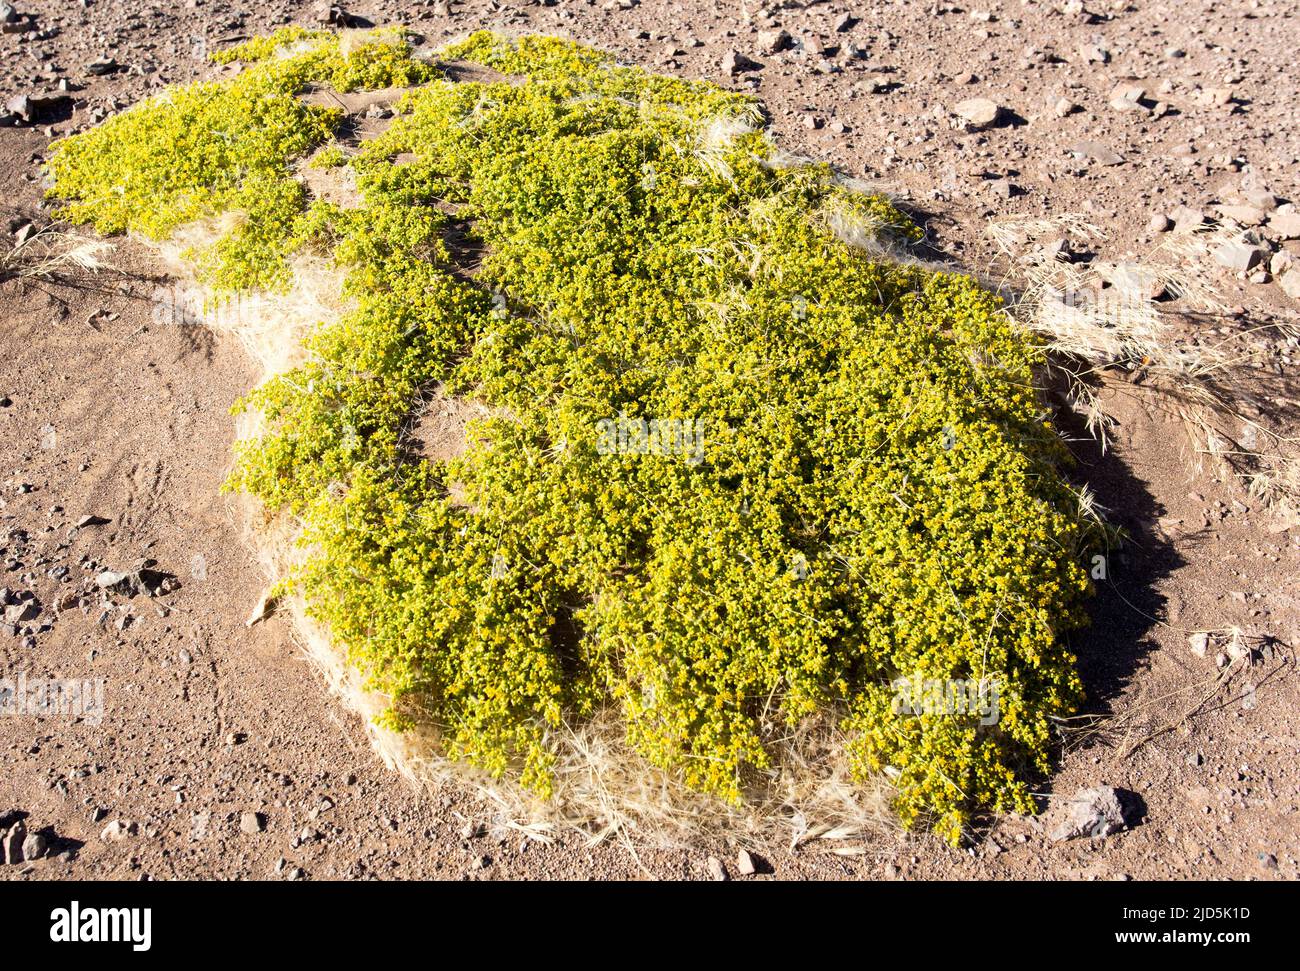 View of tetraena plant in Namibia desert Stock Photo